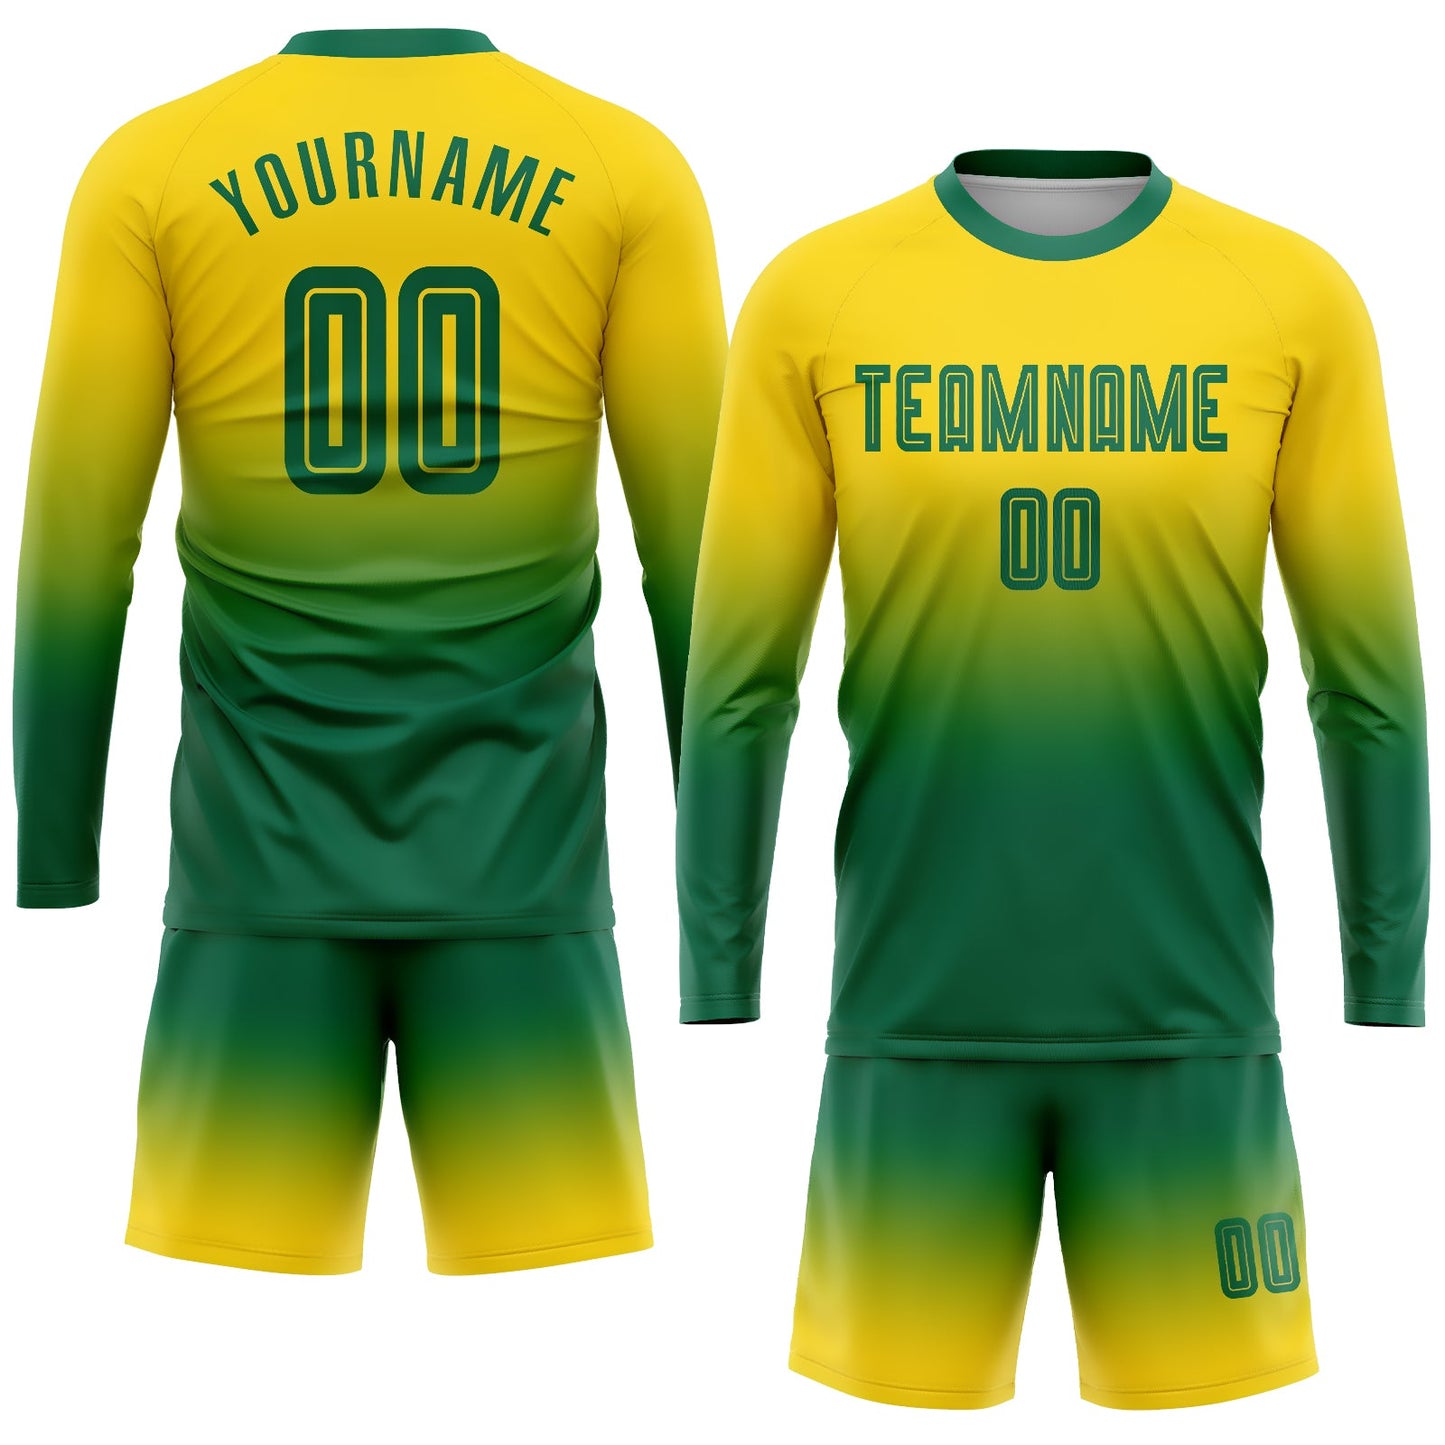 Maillot d'uniforme de football à manches longues, personnalisé, vert Kelly, or, fondu, à la mode, par Sublimation